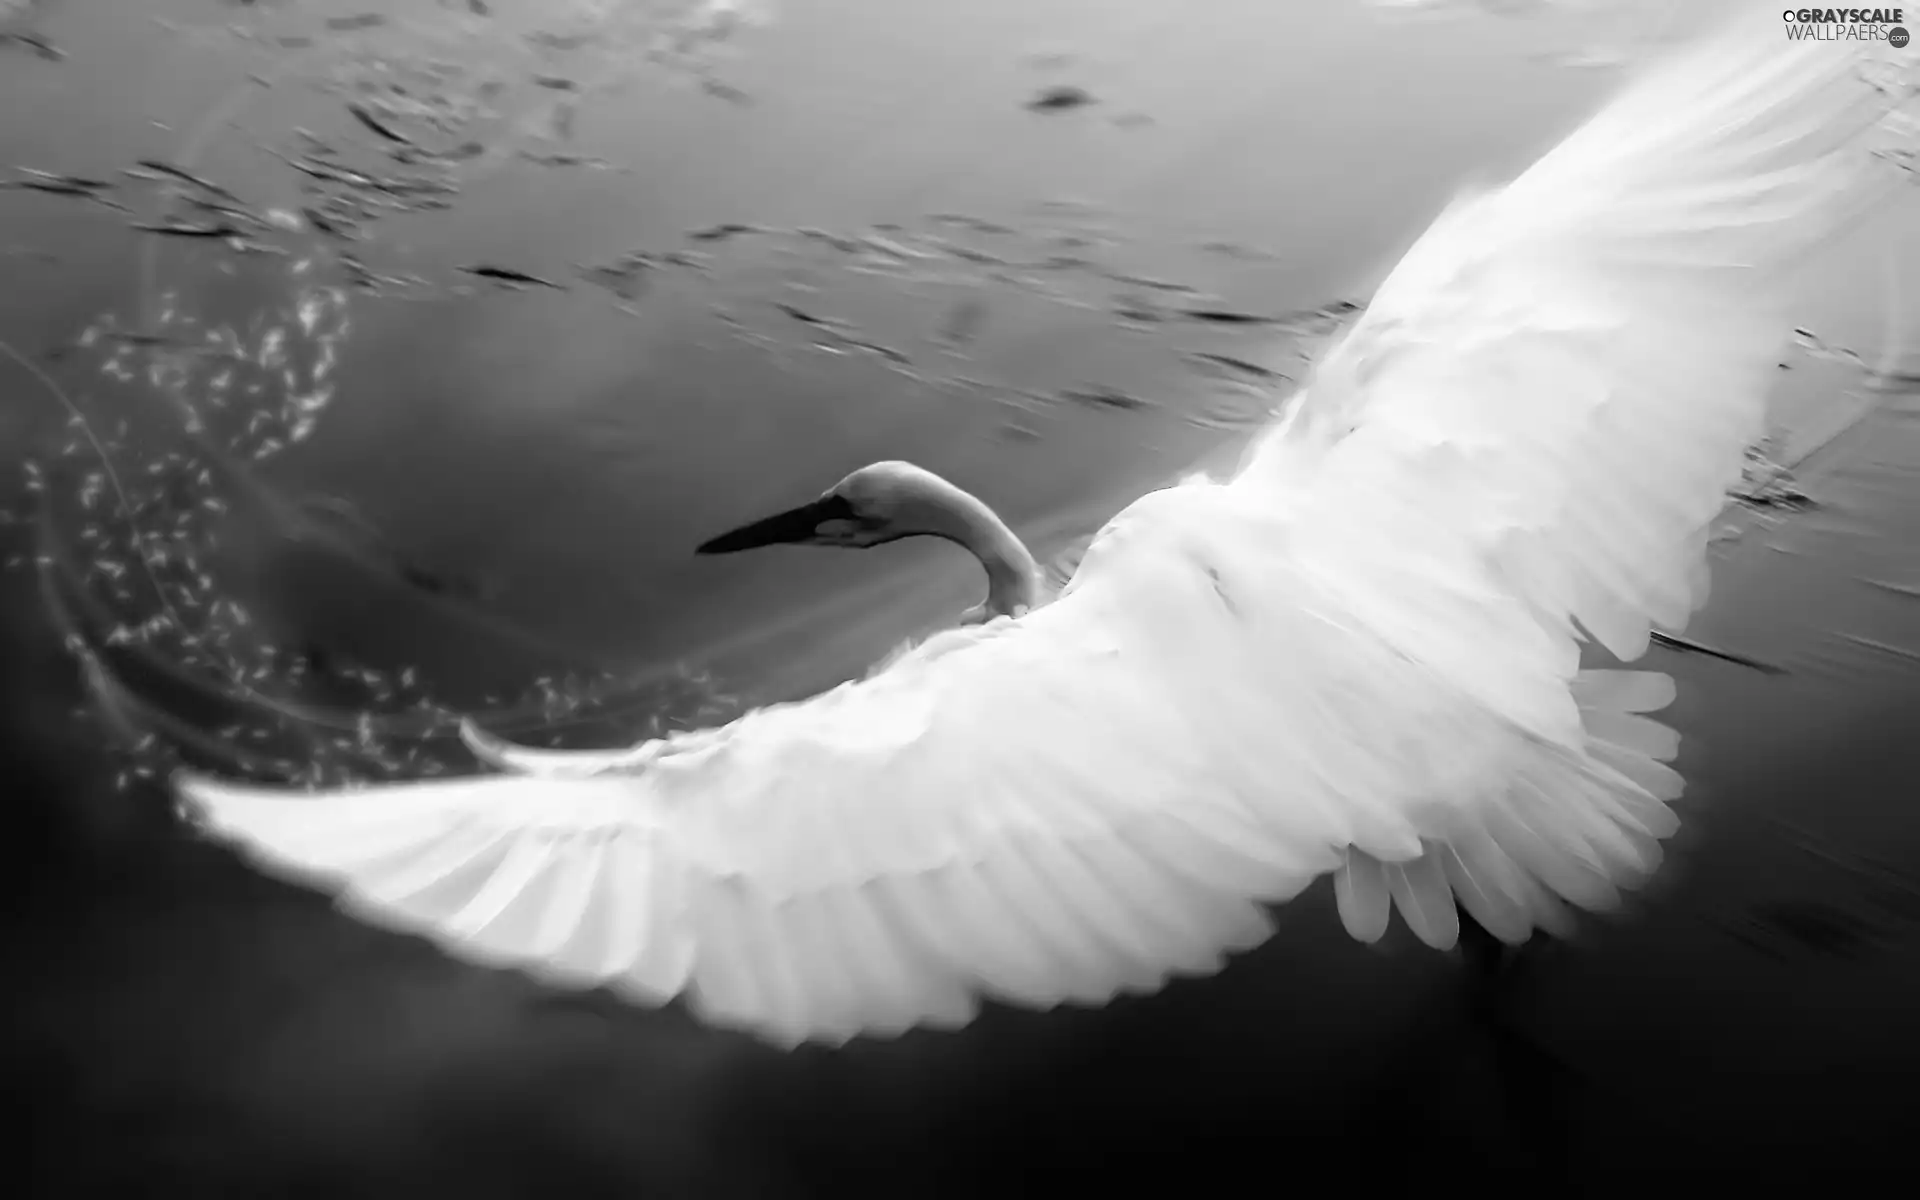 water, Swans, wings